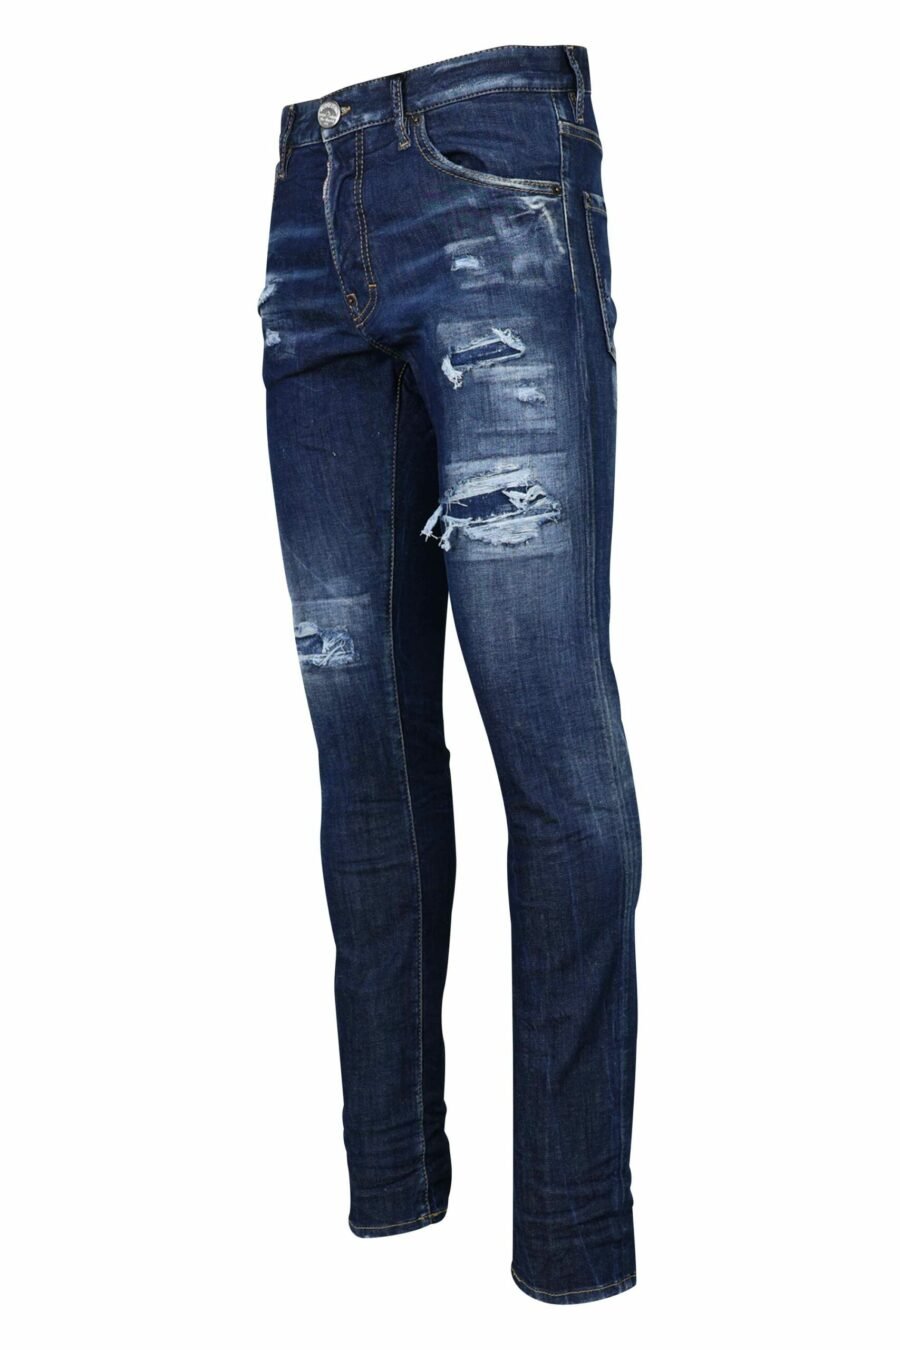 Cool guy" blaue, halb zerschlissene Jeans - 8054148105396 1 skaliert